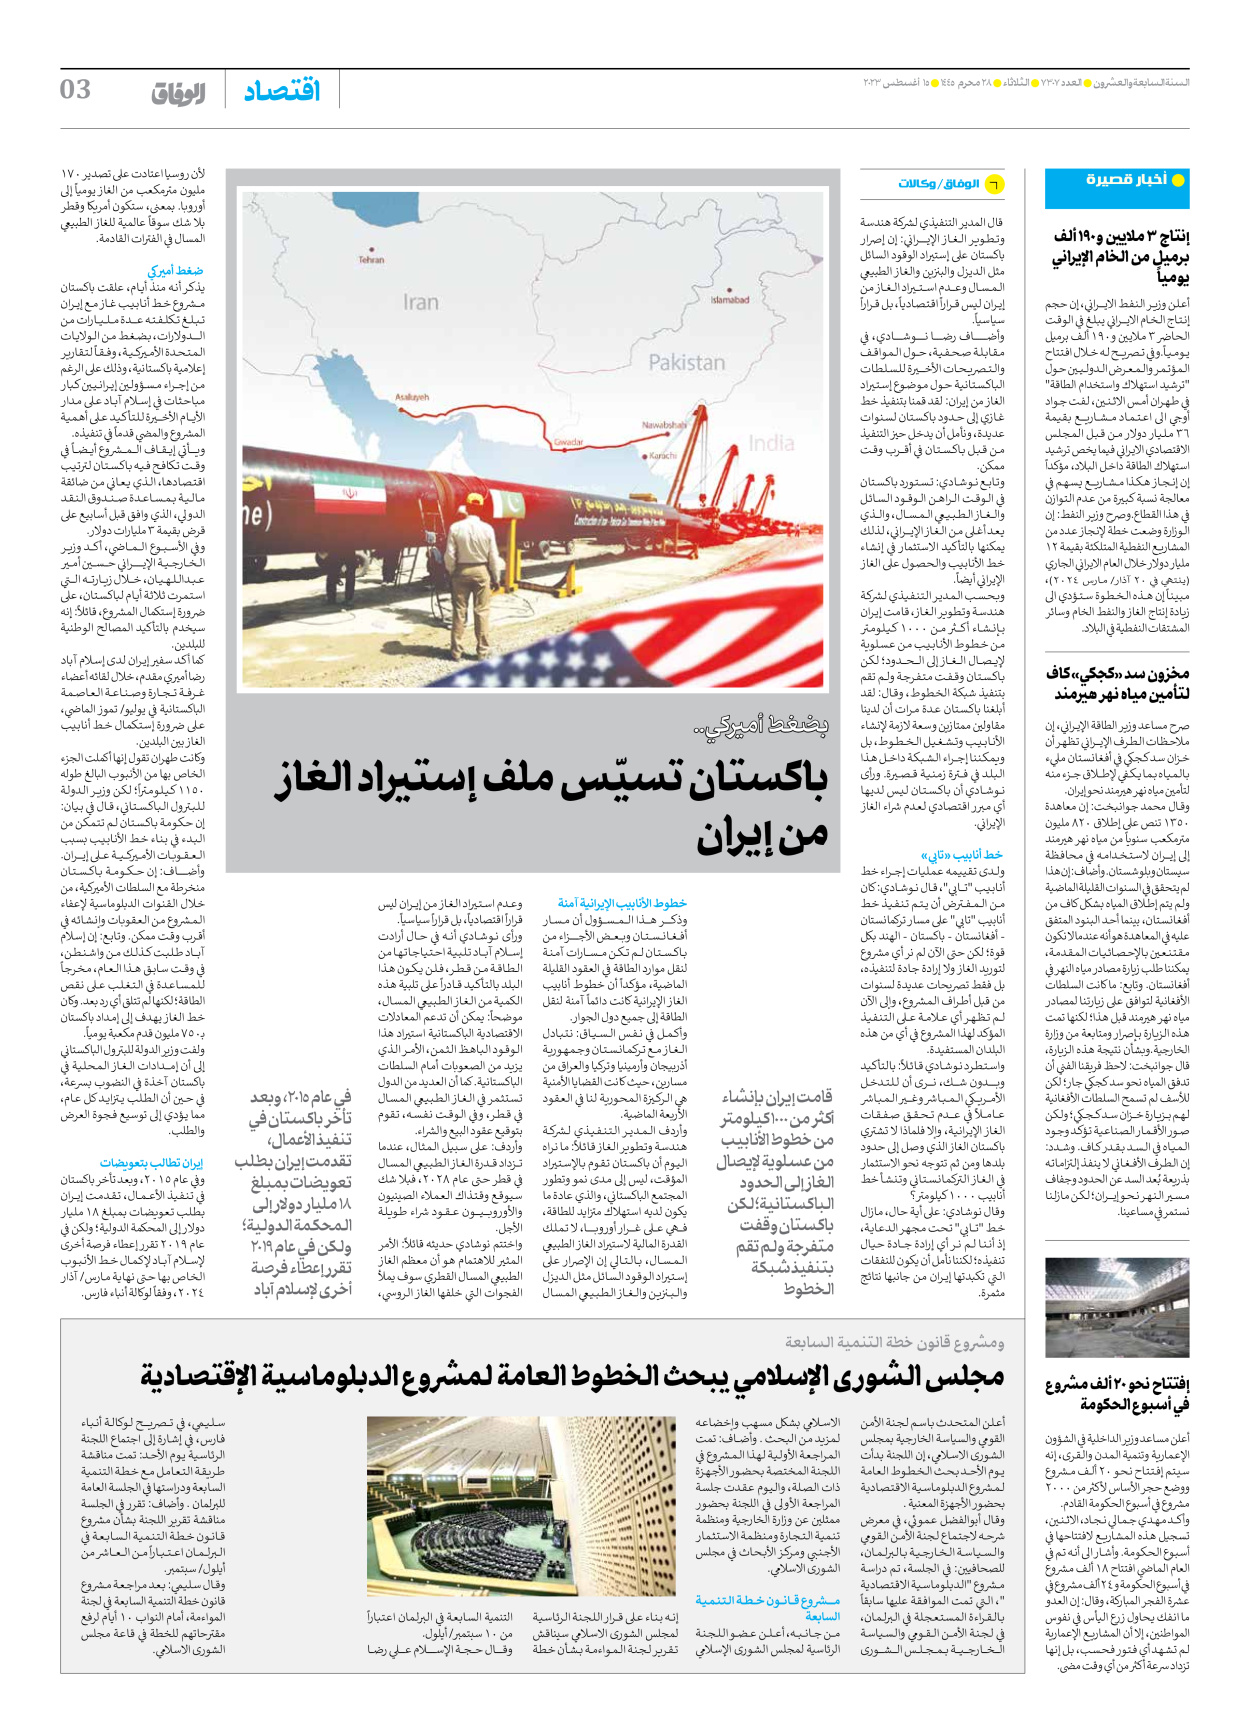 صحیفة ایران الدولیة الوفاق - العدد سبعة آلاف وثلاثمائة وسبعة - ١٤ أغسطس ٢٠٢٣ - الصفحة ۳